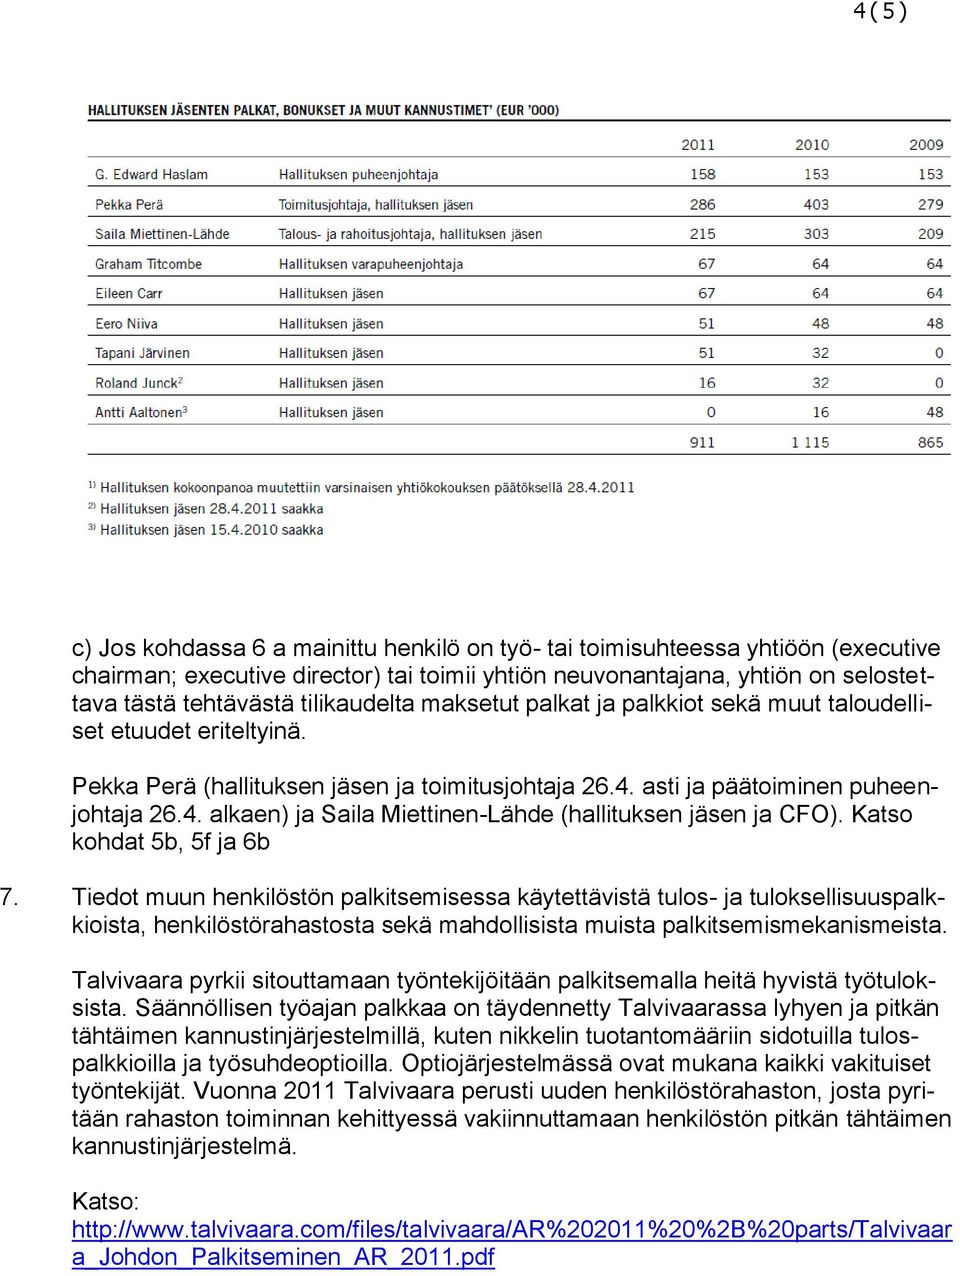 asti ja päätoiminen puheenjohtaja 26.4. alkaen) ja Saila Miettinen-Lähde (hallituksen jäsen ja CFO). Katso kohdat 5b, 5f ja 6b 7.